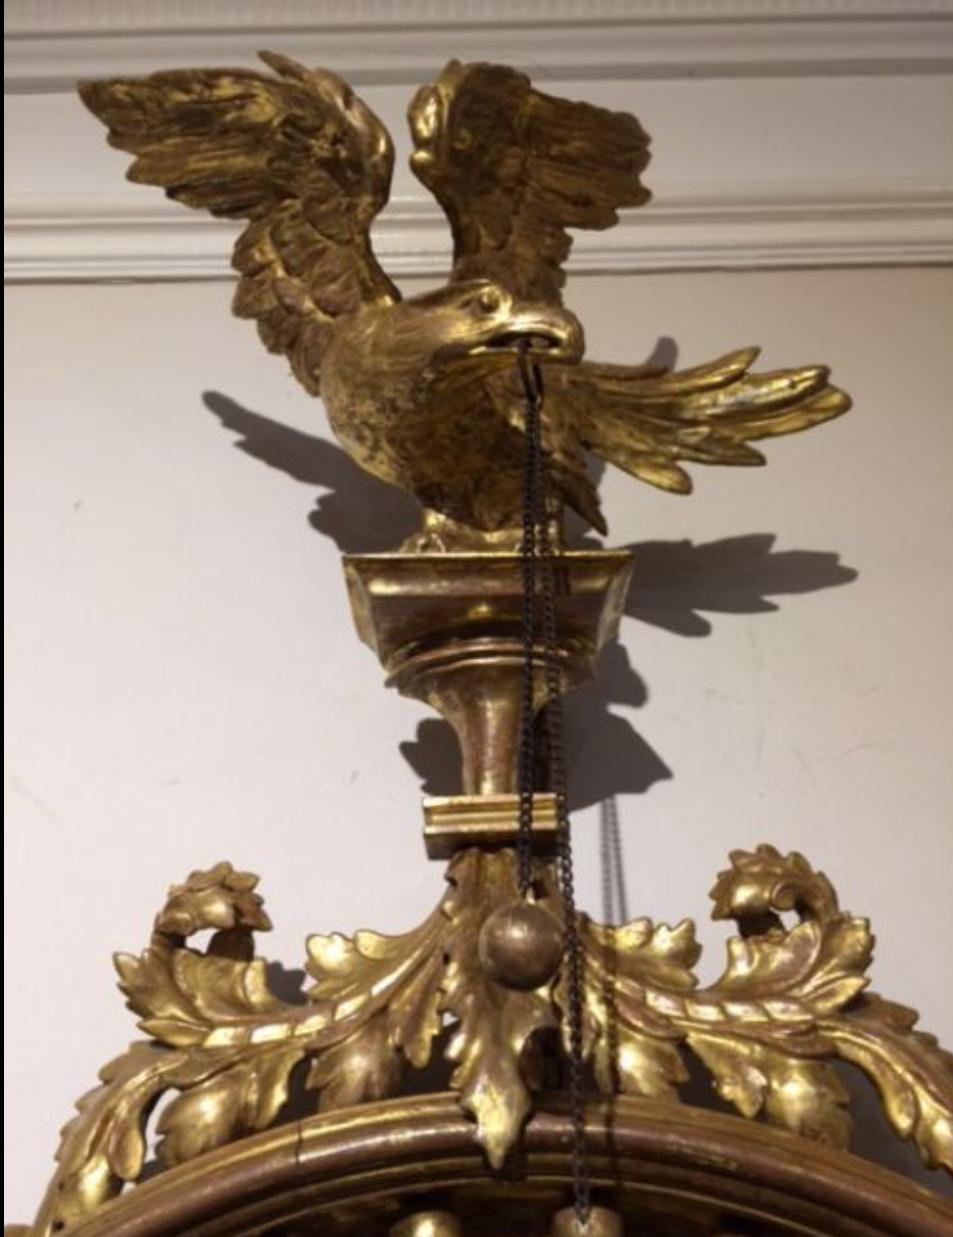 Ein kleiner vergoldeter und geschnitzter konvexer Spiegel aus der Regency-Periode, ein dekorativer geformter Rahmen, der durch aufgesetzte vergoldete Kugeln und eine Perlenbordüre aufgewertet wird, ein ebonisierter Zettel im Inneren, gekrönt von